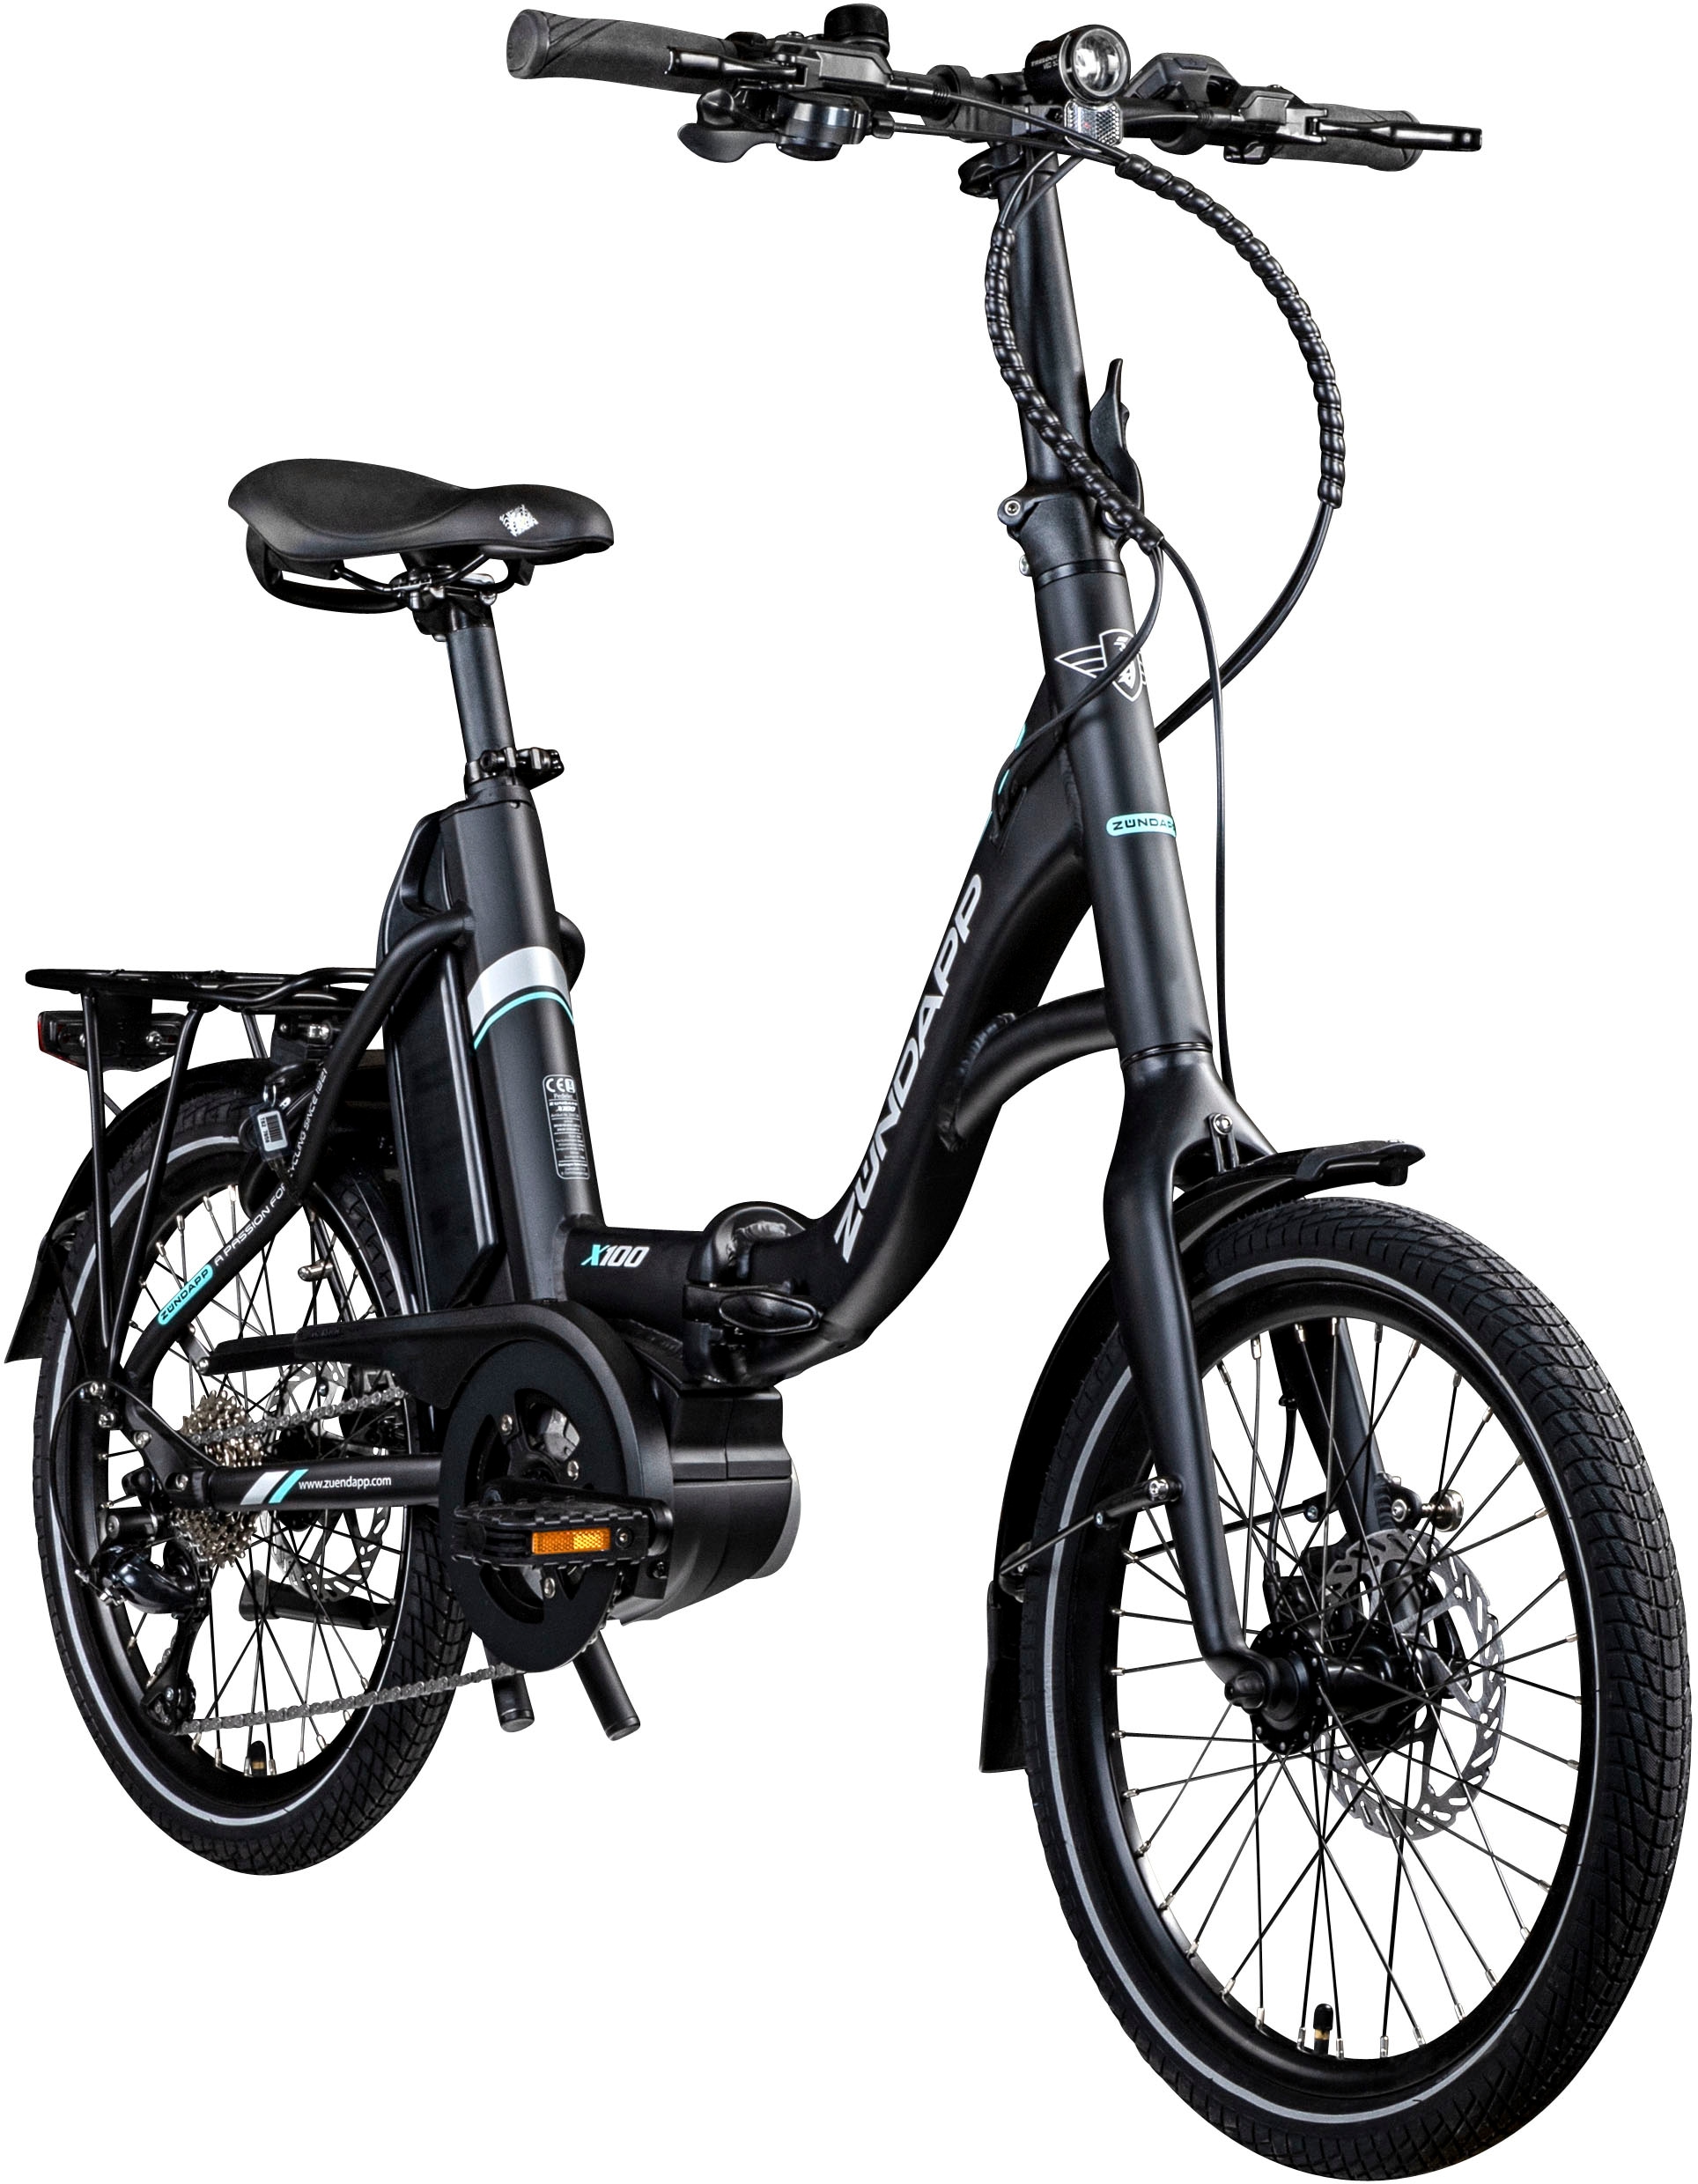 Zündapp E-Bike »X100«, 9 Gang, Shimano, Sora, Mittelmotor 250 W, Pedelec, Elektrofahrrad für Damen u. Herren, Faltrad